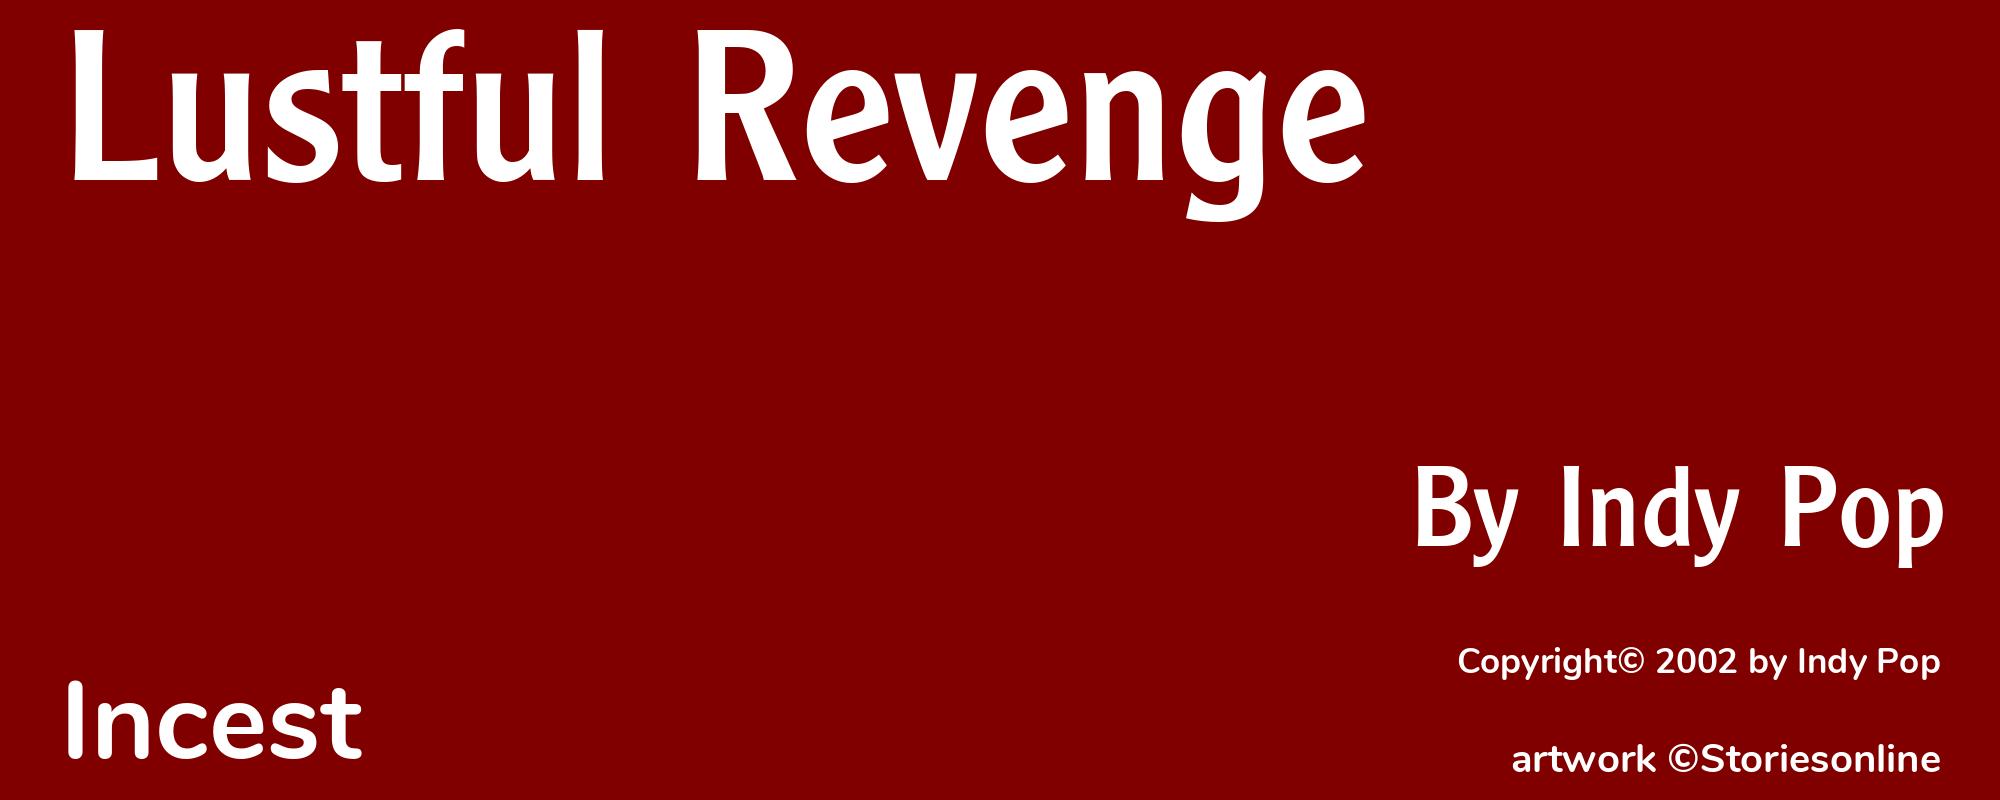 Lustful Revenge - Cover